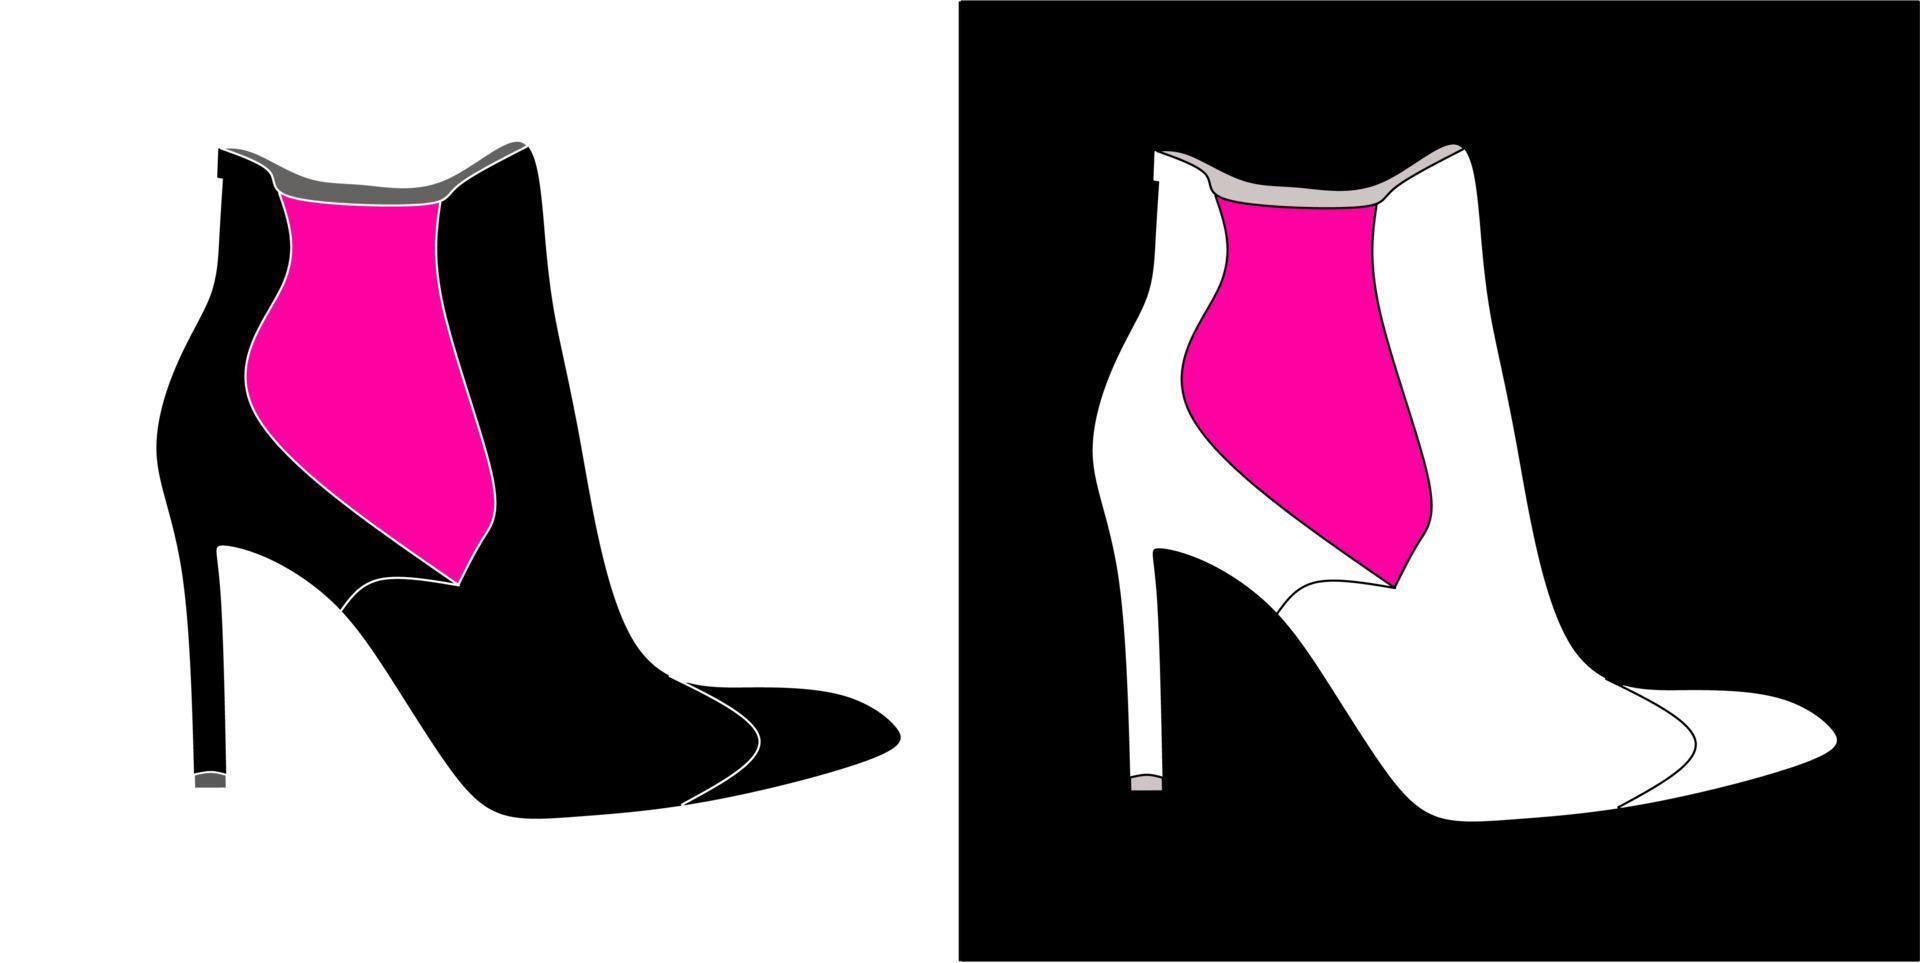 illustration vectorielle de chaussures, isolées sur fond noir et blanc vecteur